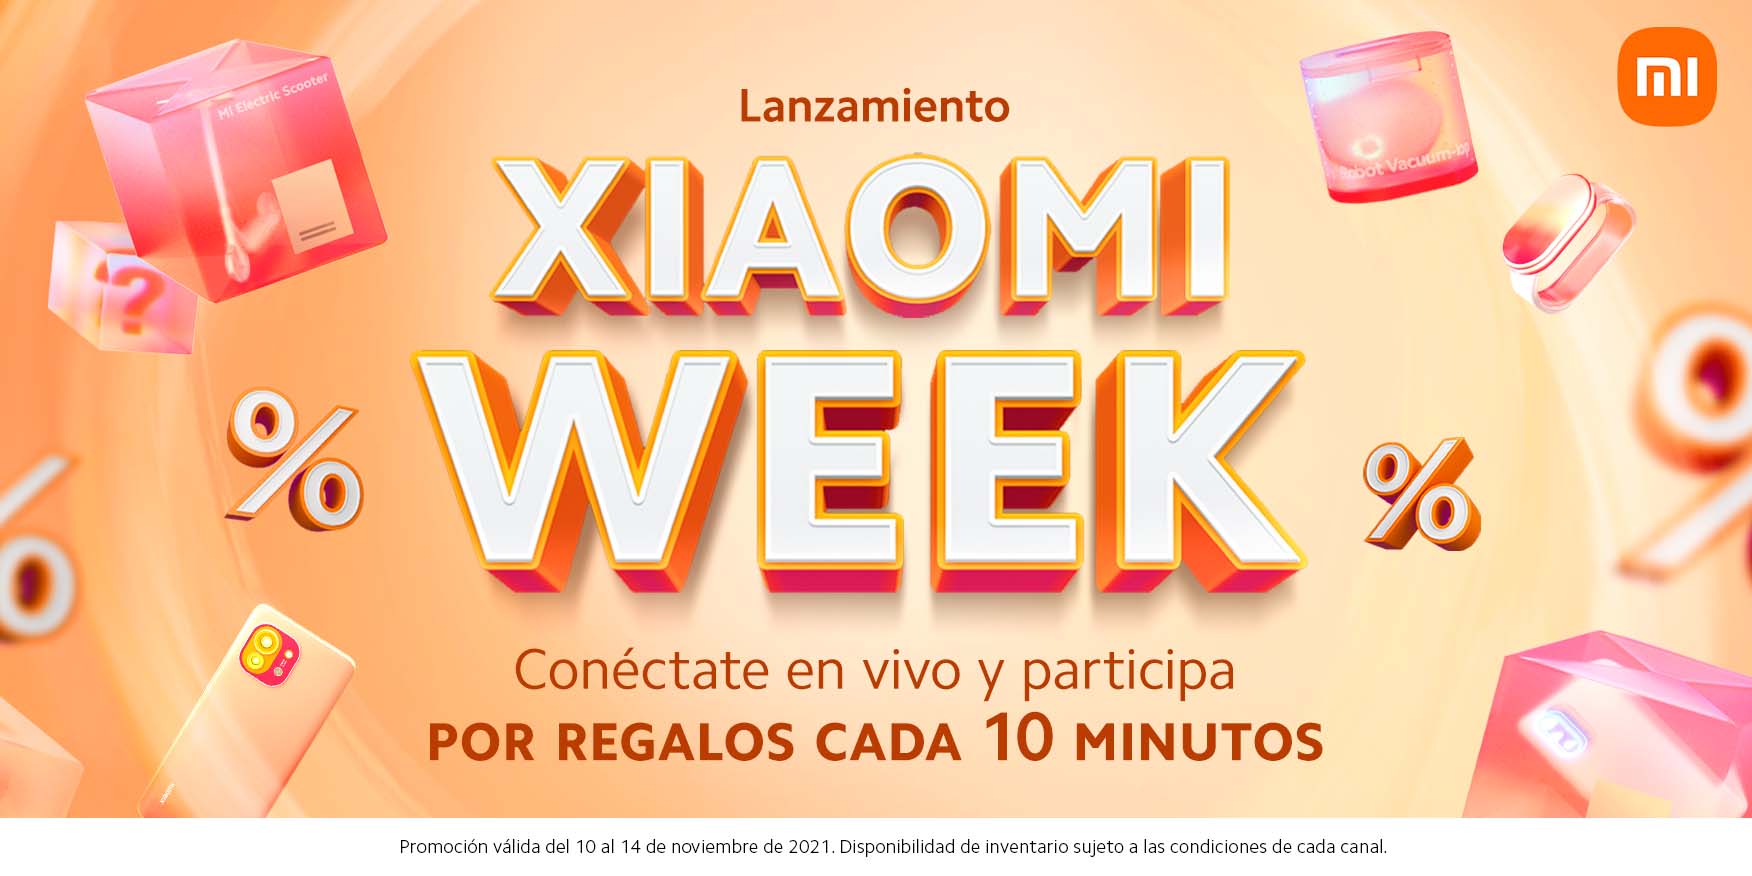 La marca anuncia la celebración de su ‘Xiaomi Week’ para premiar a los usuarios más fieles que quieren seguir disfrutando de una